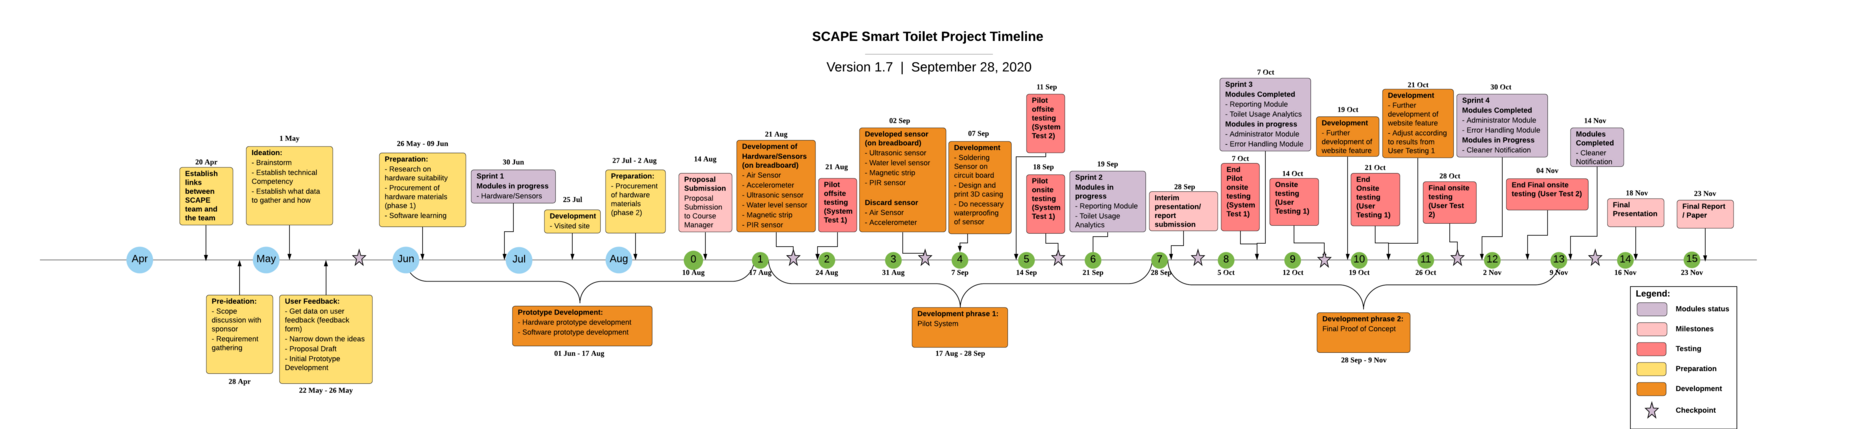 SCAPE Smart Toilet Timeline v1.7 (2).png